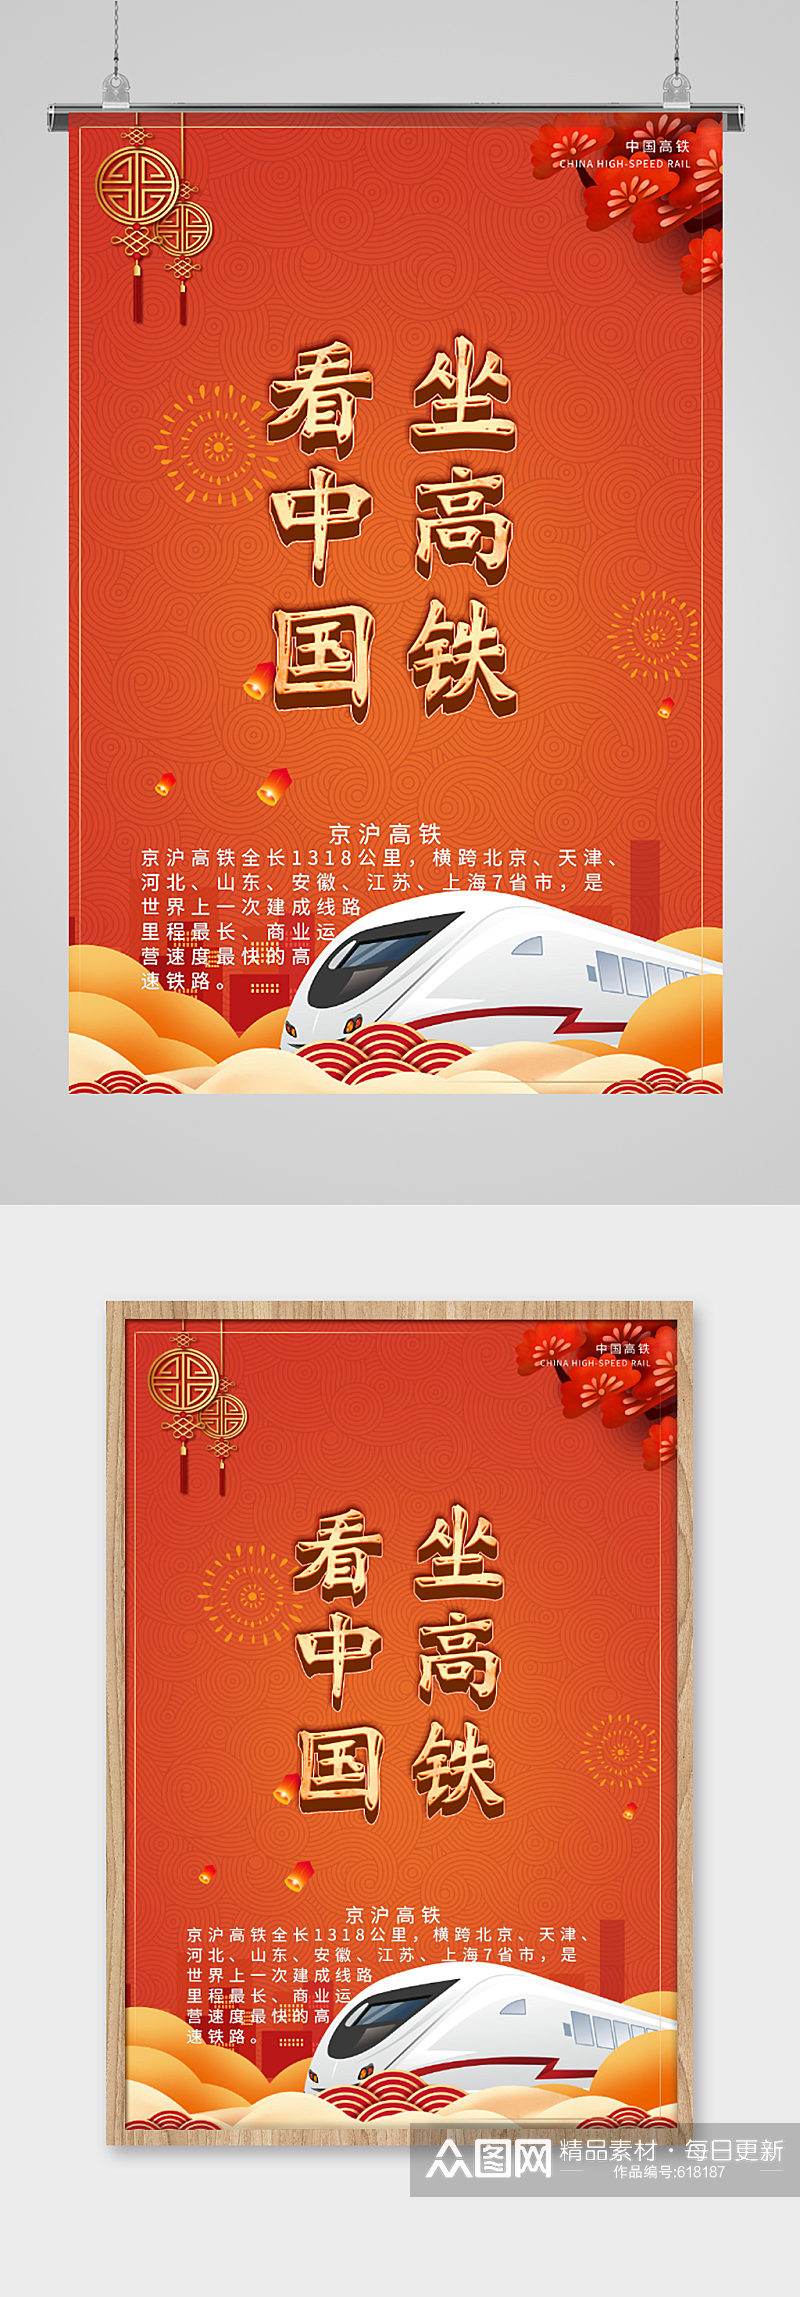 坐高铁看中国节日海报素材